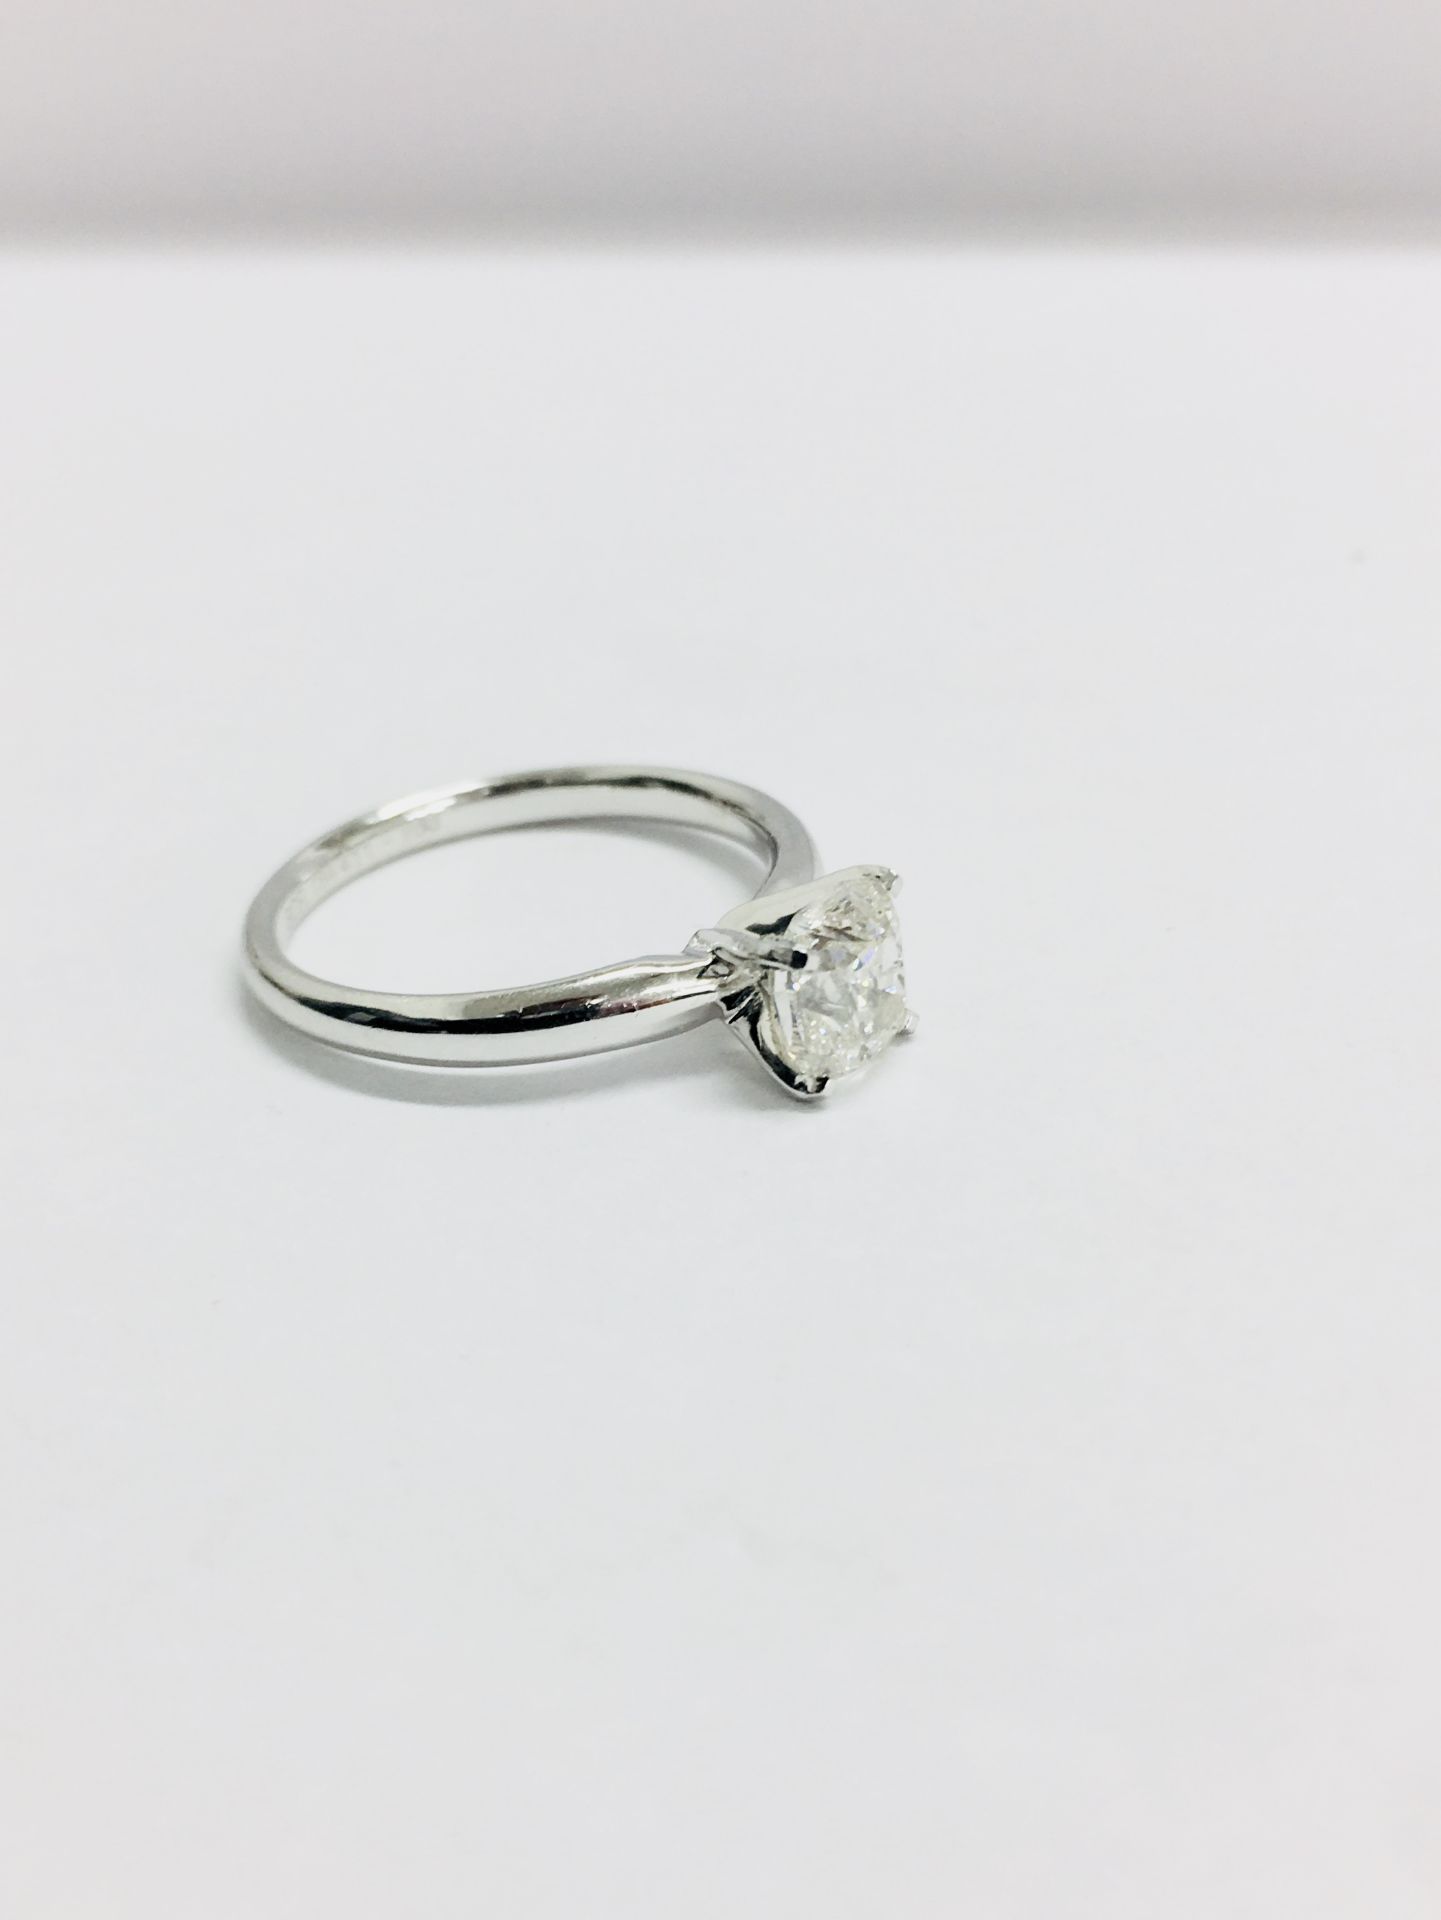 1c t cushion cut diamond solitaires ring,1ct cushion cut H colour vs 1 clarity,platinum setting, - Bild 3 aus 4